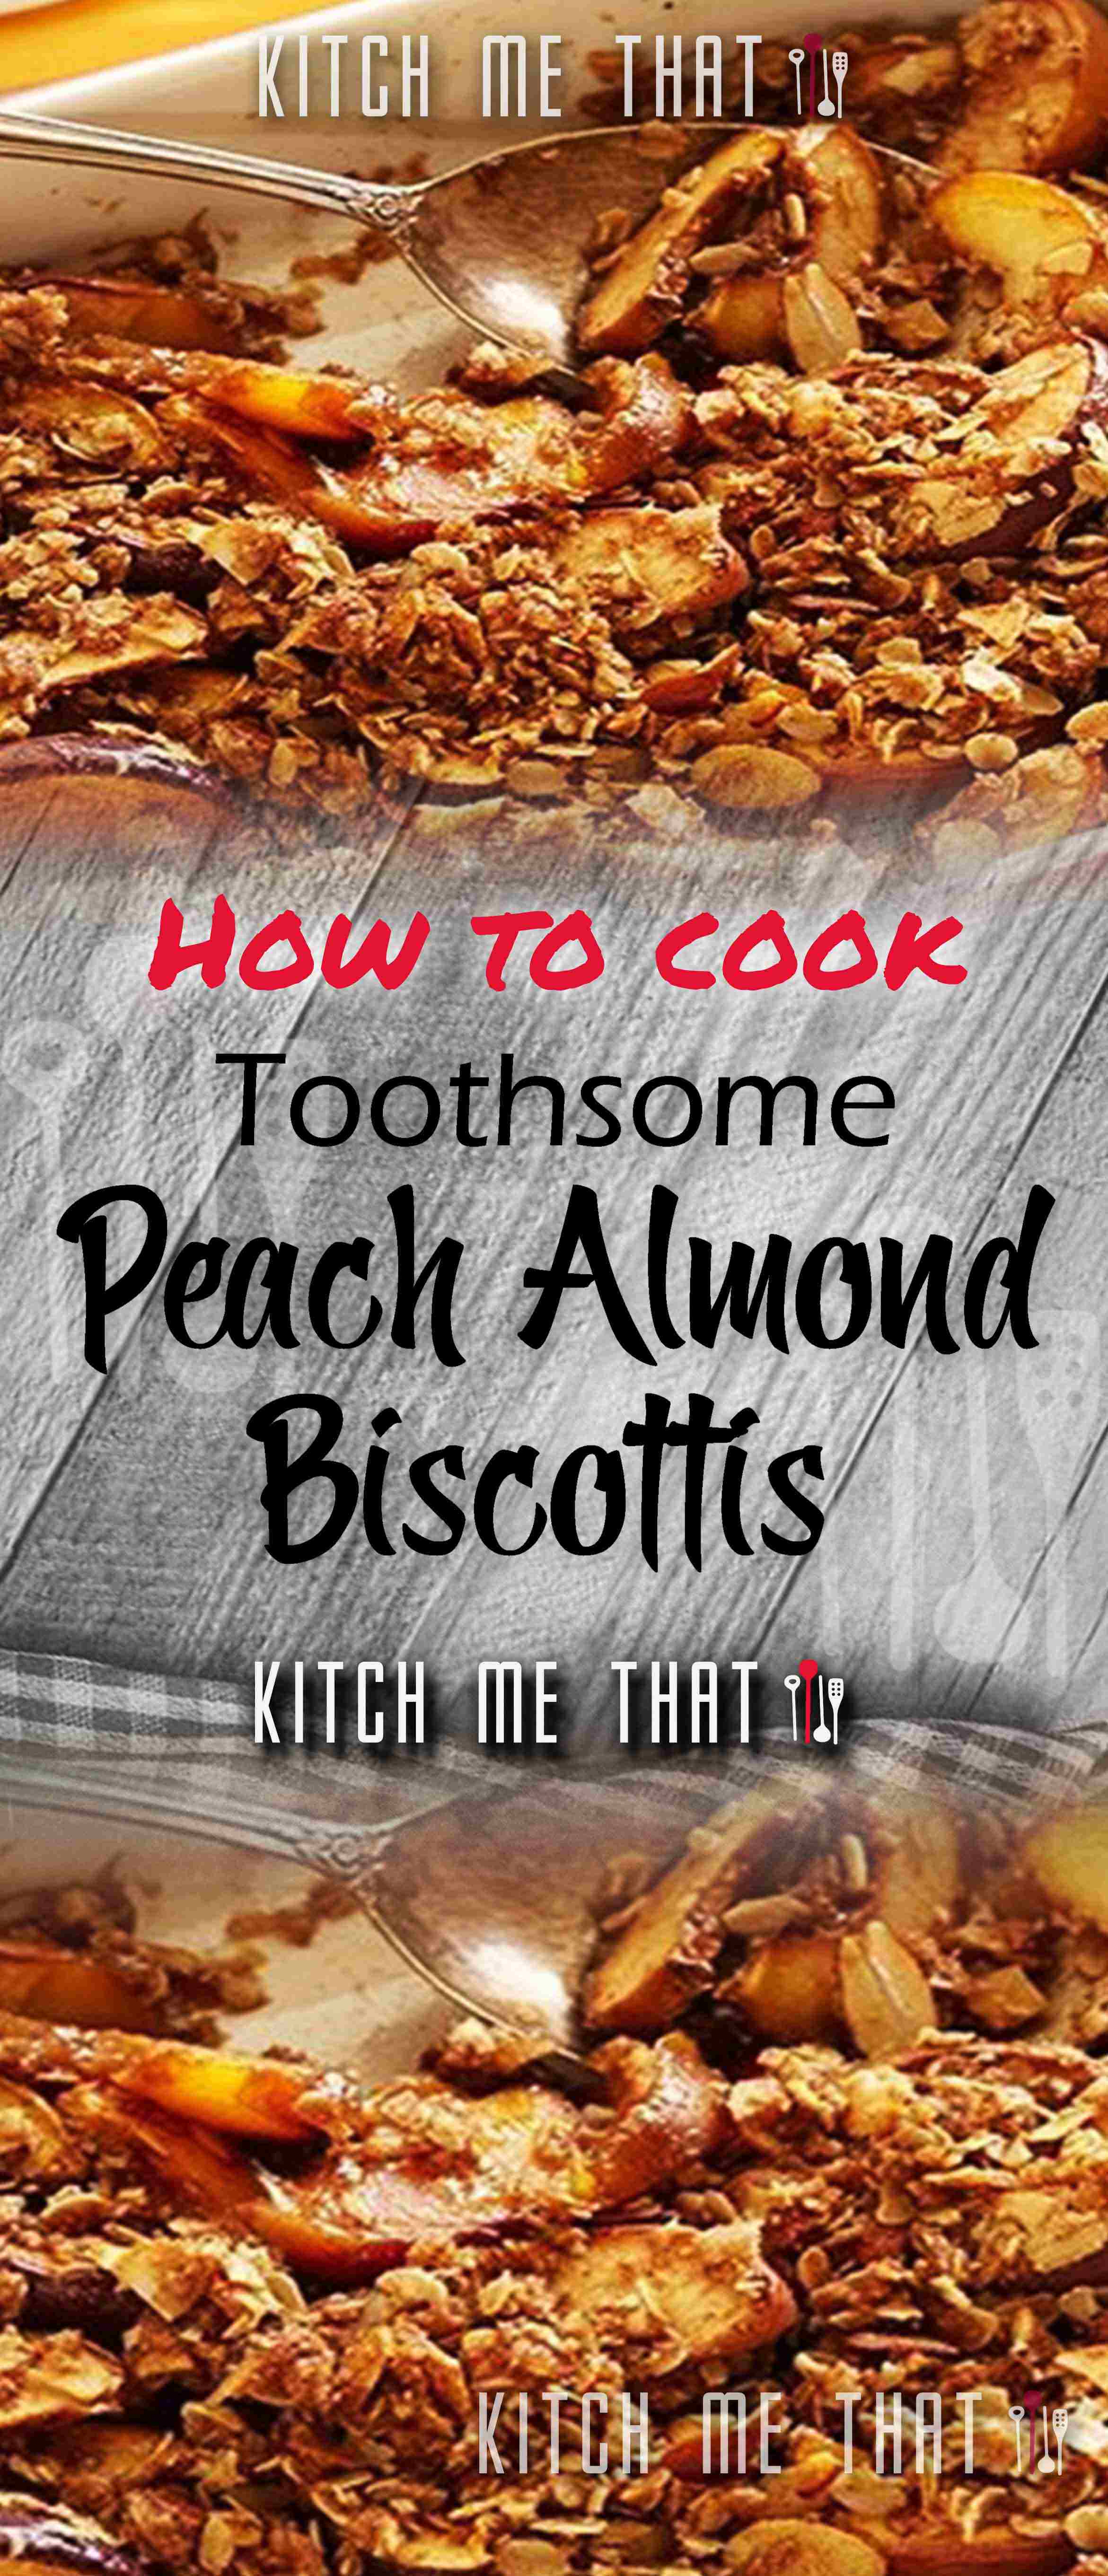 Peach Almond Biscottis